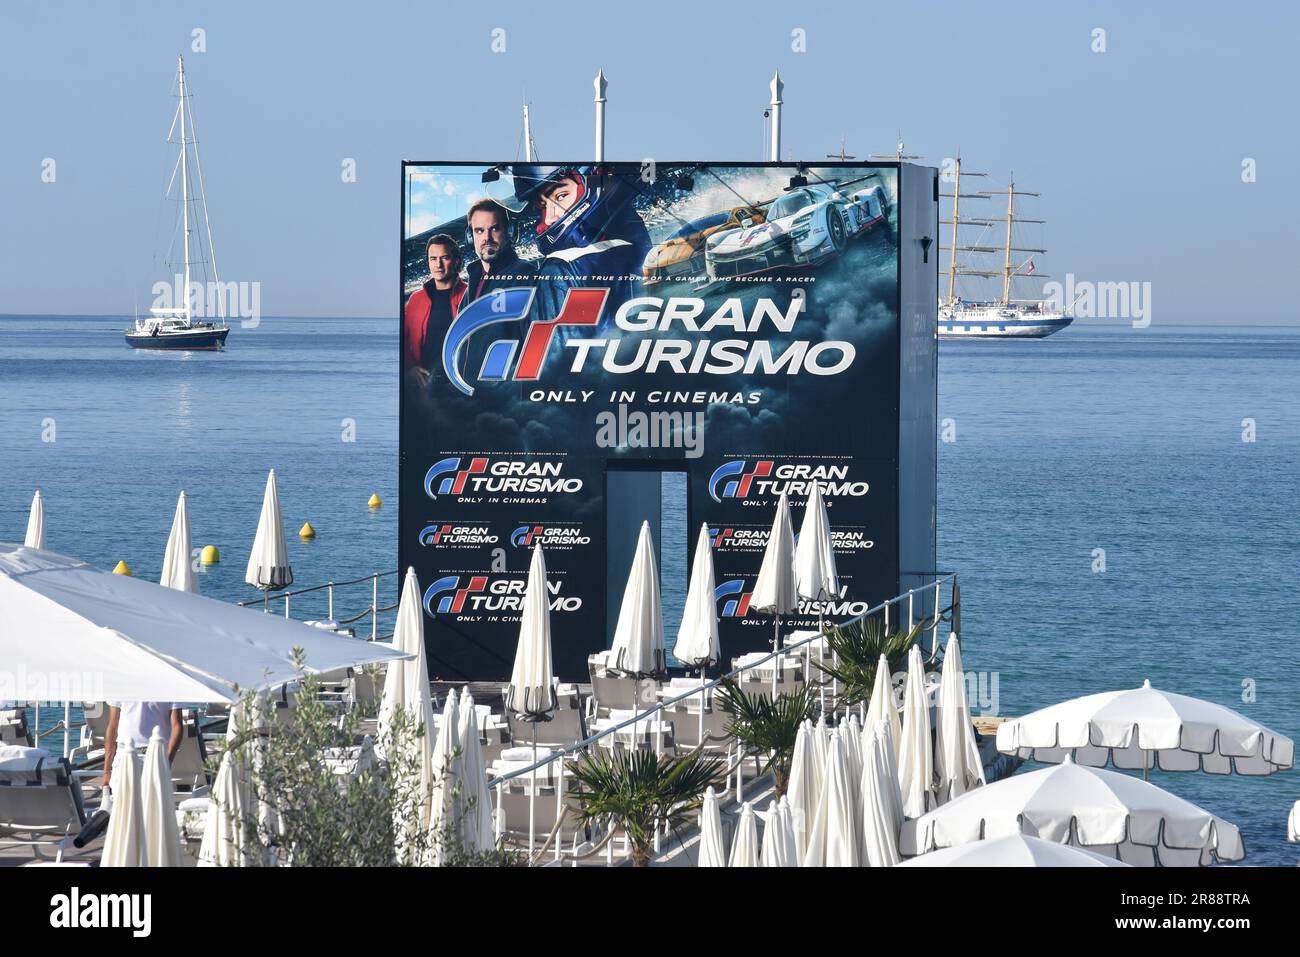 Frankreich, französische riviera, Cannes, Werbetoster für den Film Gran Turismo, Videospieladaption, bei der ein Teenager Rennfahrer werden möchte. Stockfoto